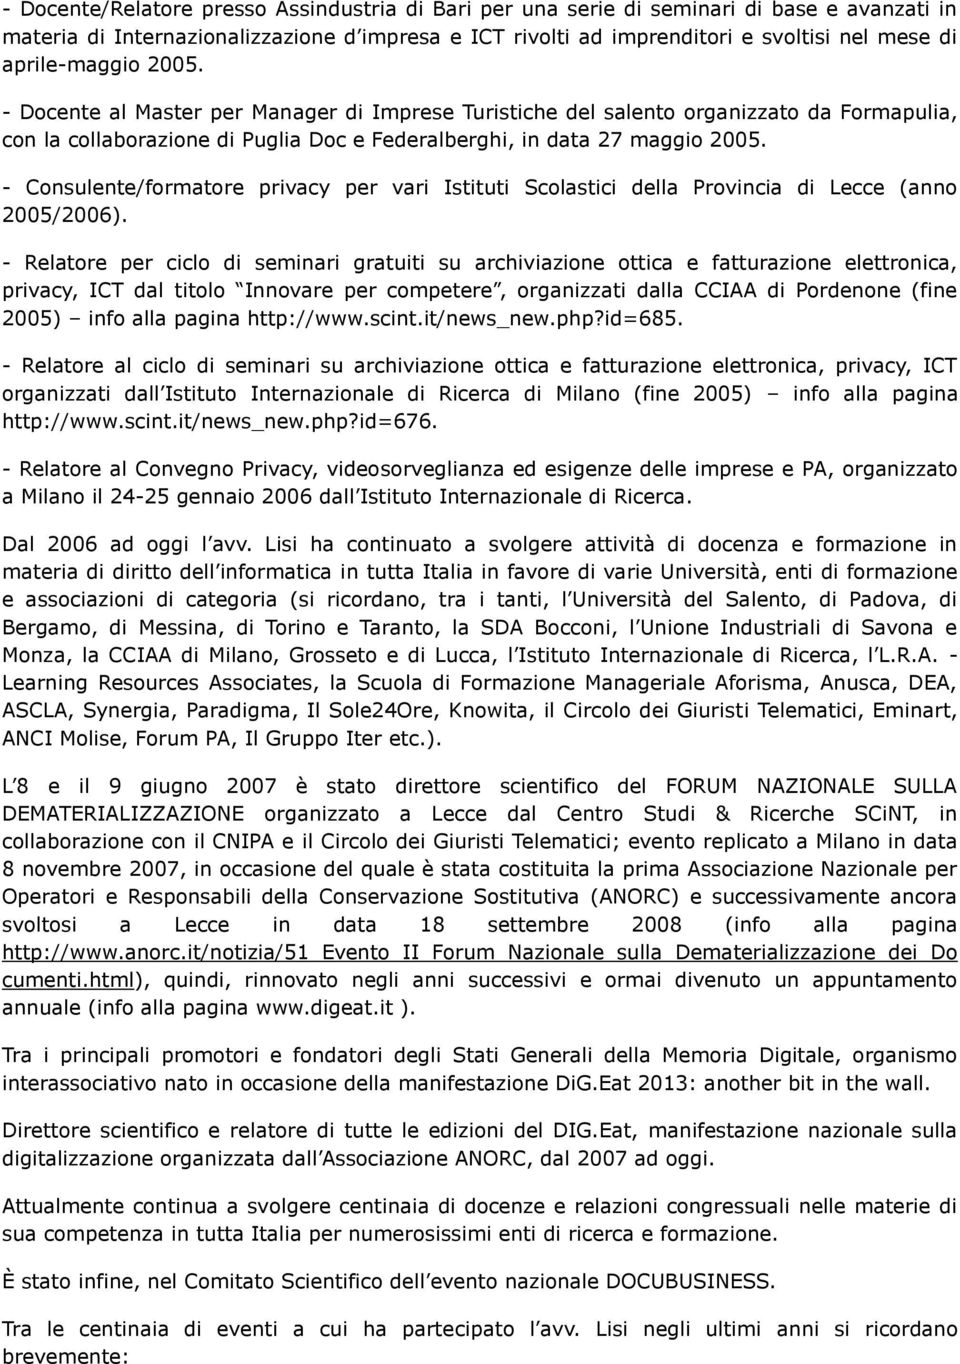 - Consulente/formatore privacy per vari Istituti Scolastici della Provincia di Lecce (anno 2005/2006).